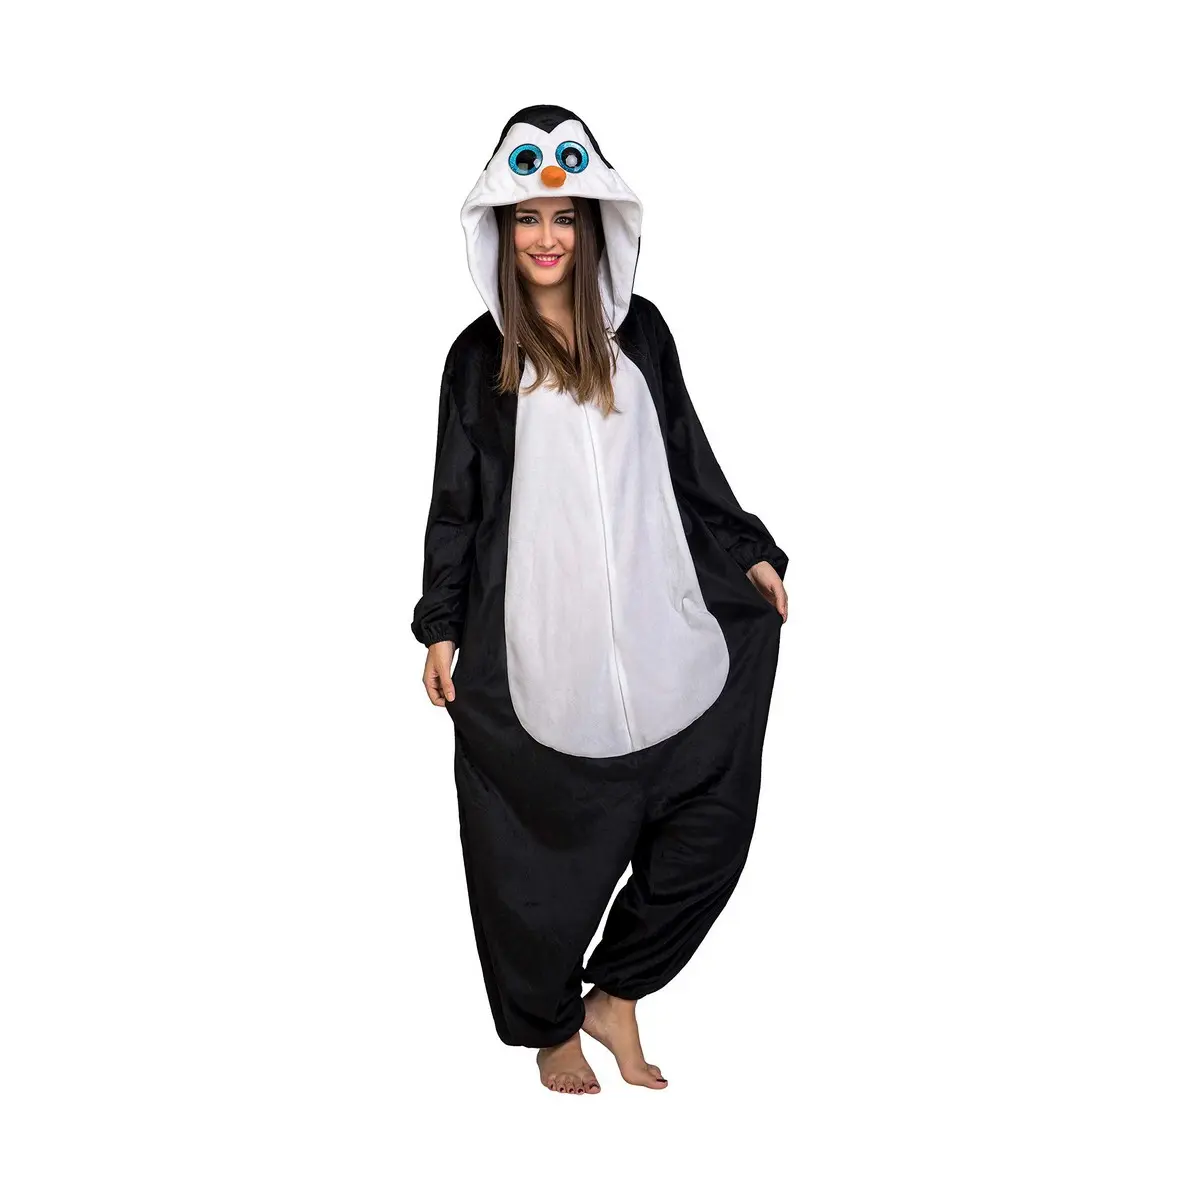 Costume per Adulti My Other Me Pinguino Taglia M/L